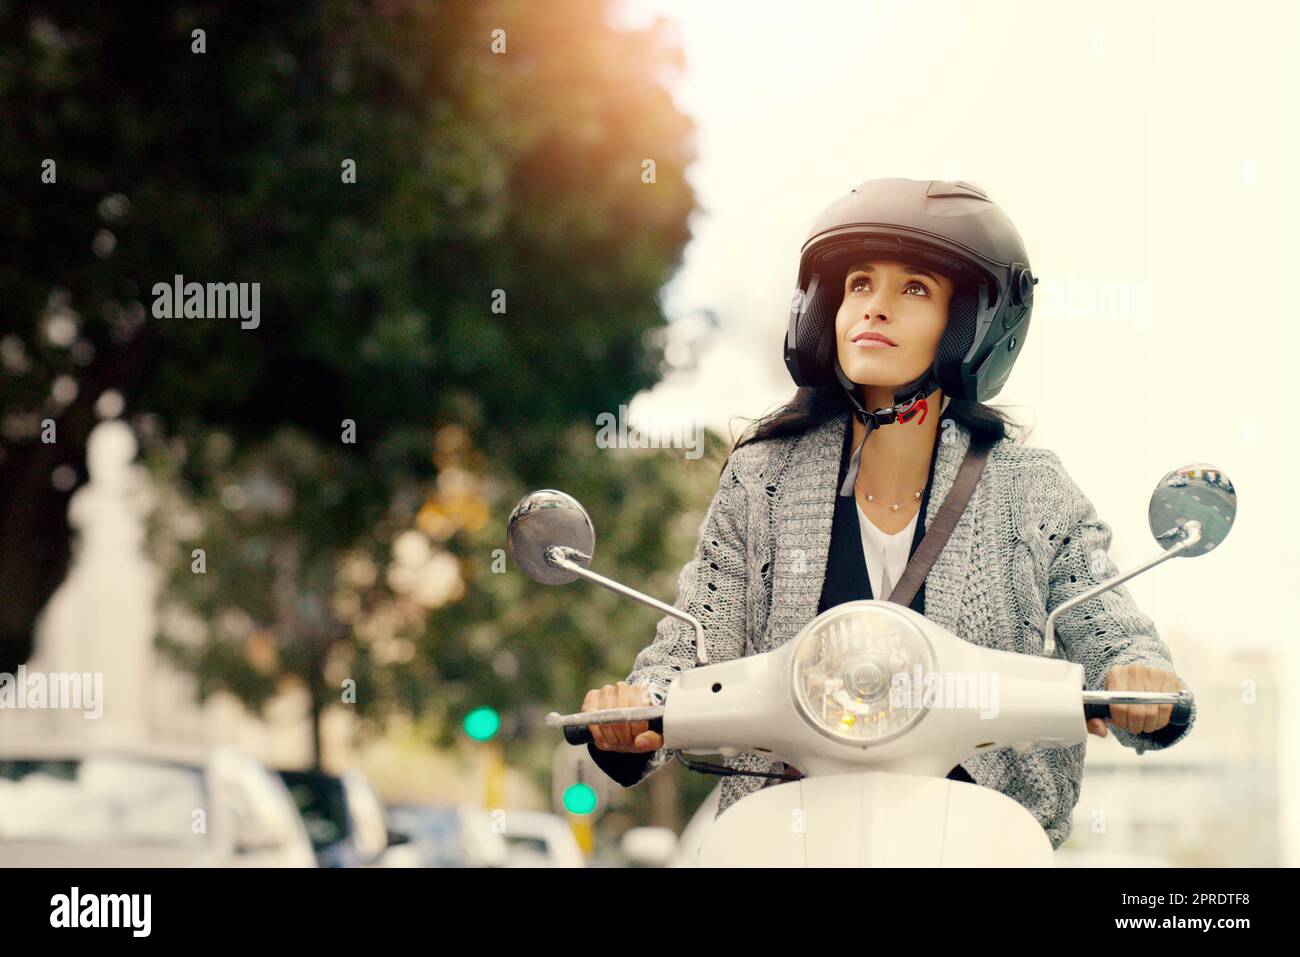 Toujours viser haut et avoir des espoirs encore plus élevés. Une jeune femme attirante à conduire son scooter à travers la ville. Banque D'Images